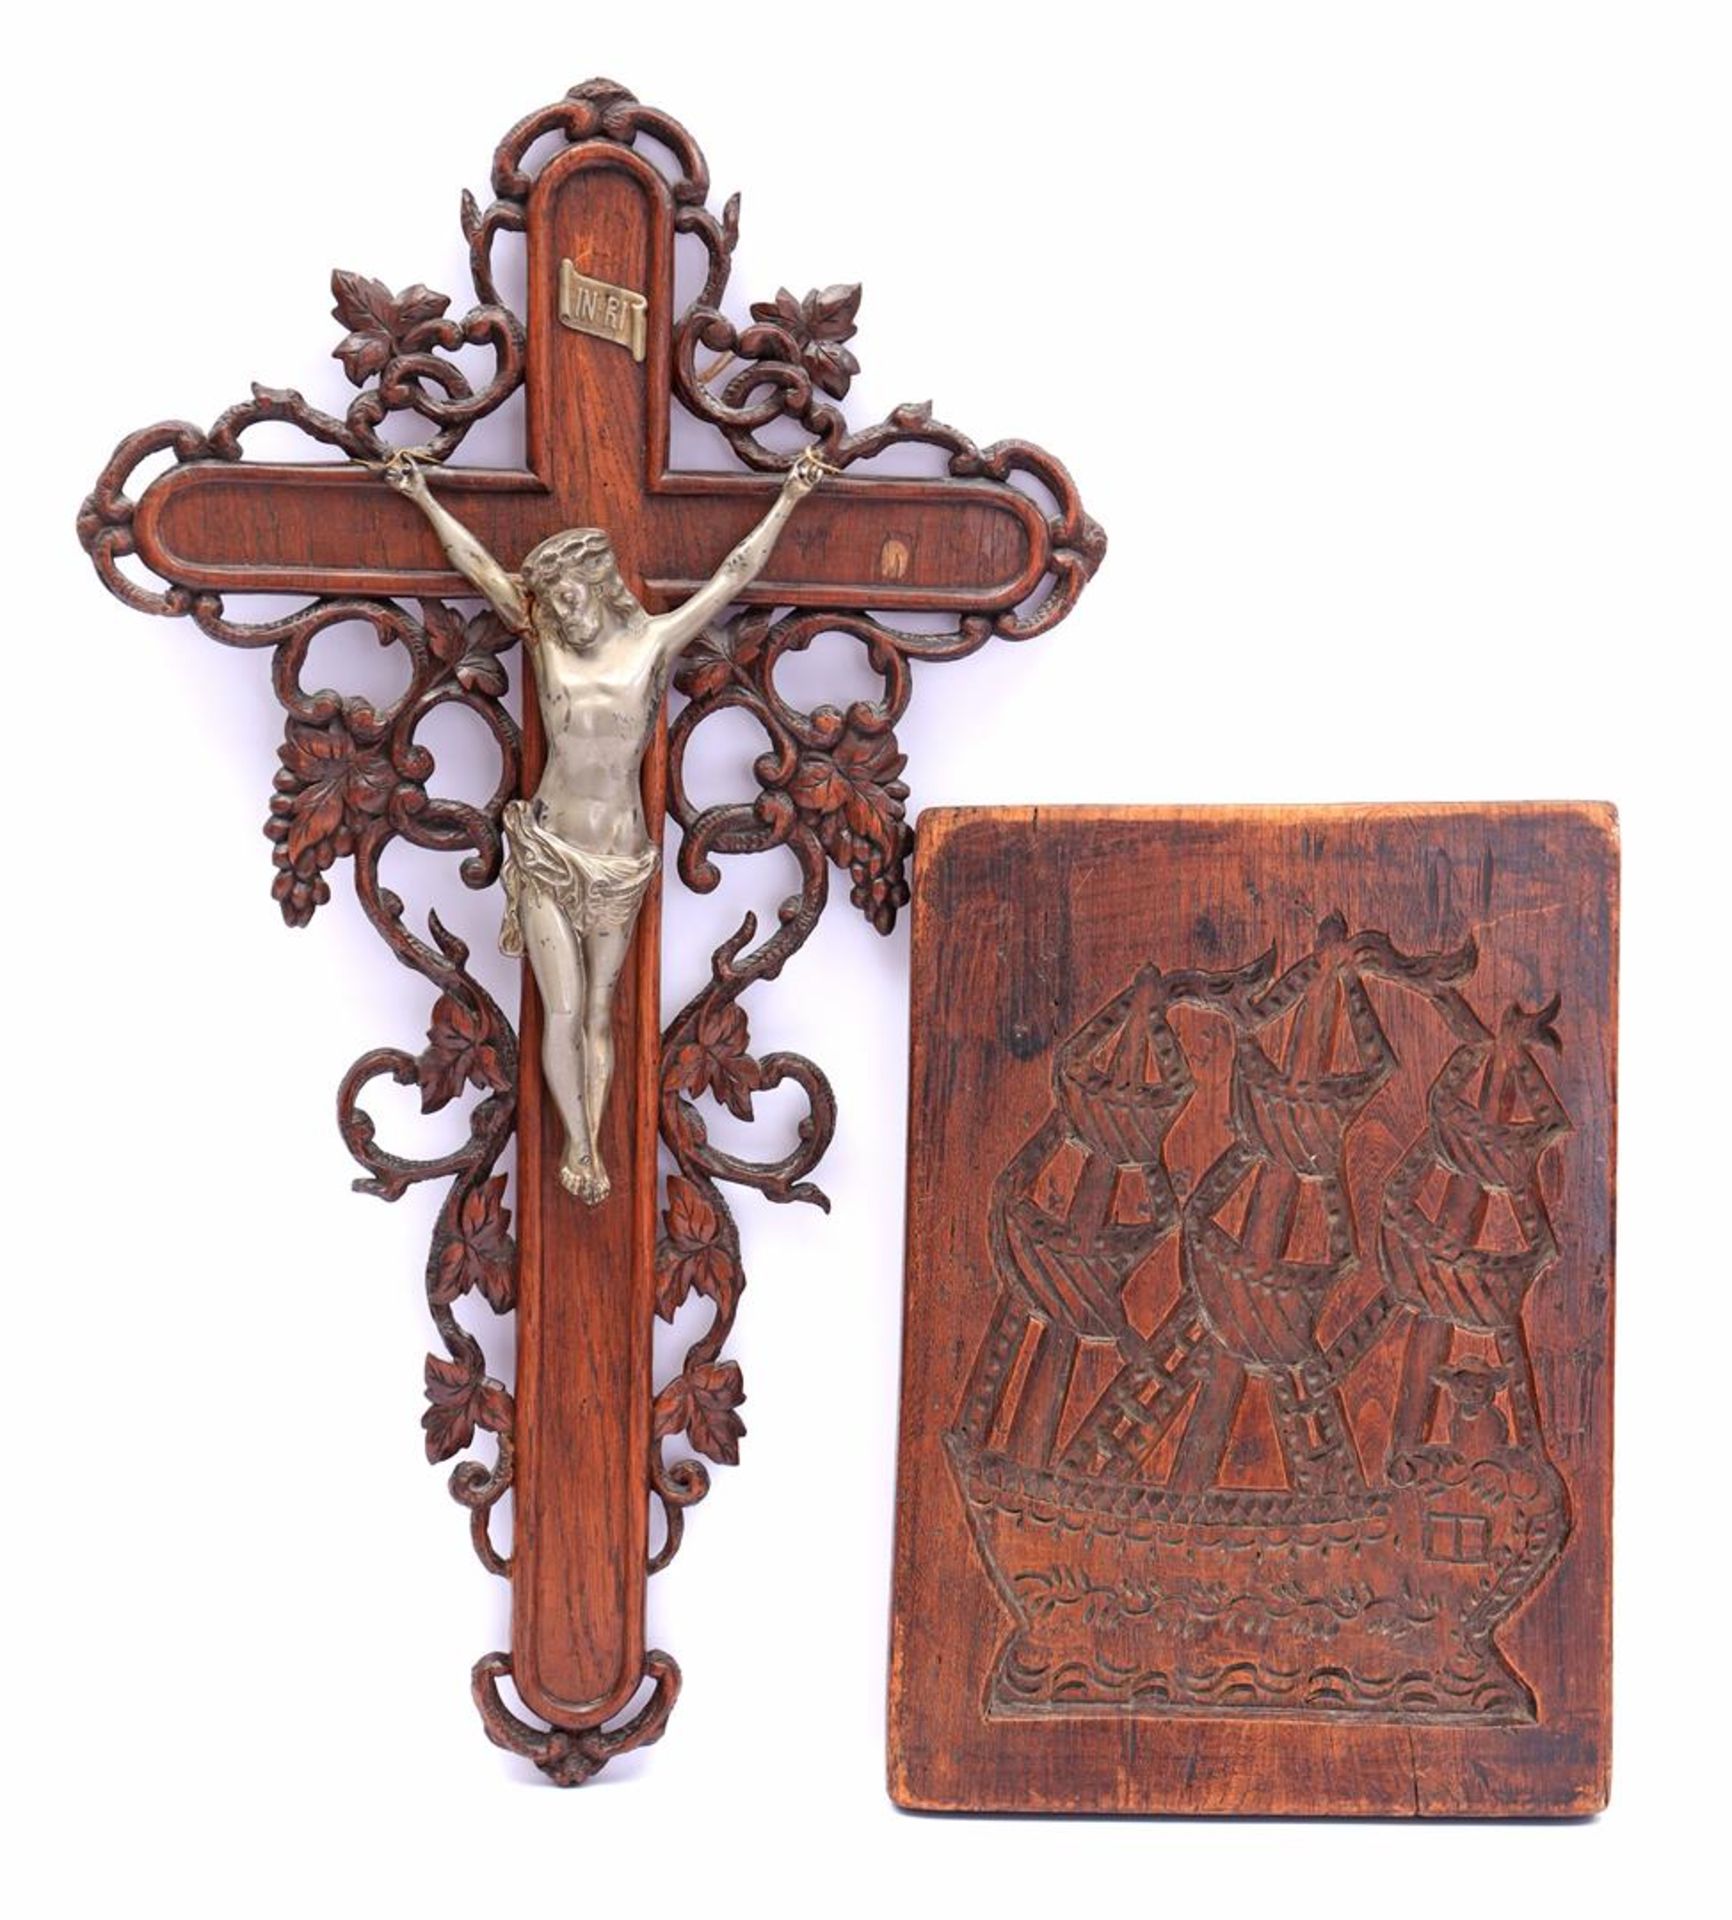 Oak-fired crucifix